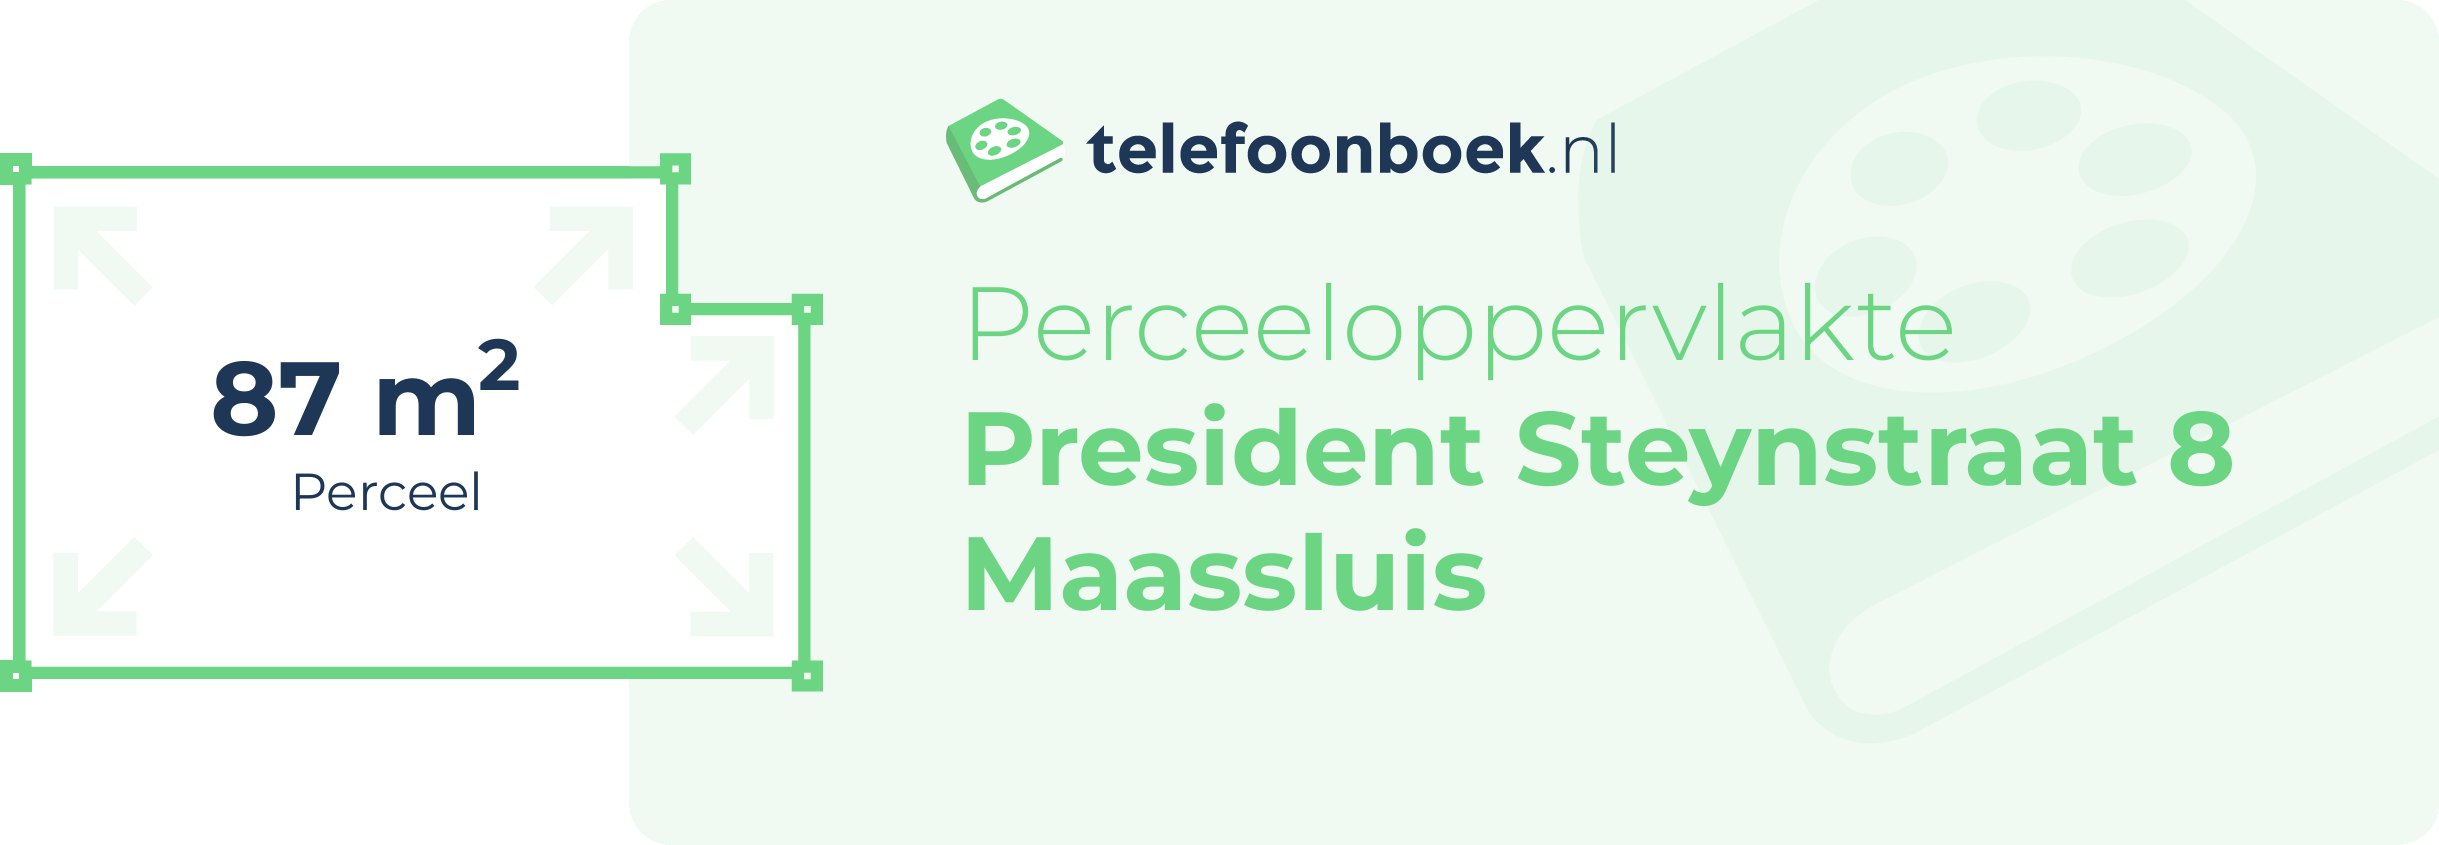 Perceeloppervlakte President Steynstraat 8 Maassluis